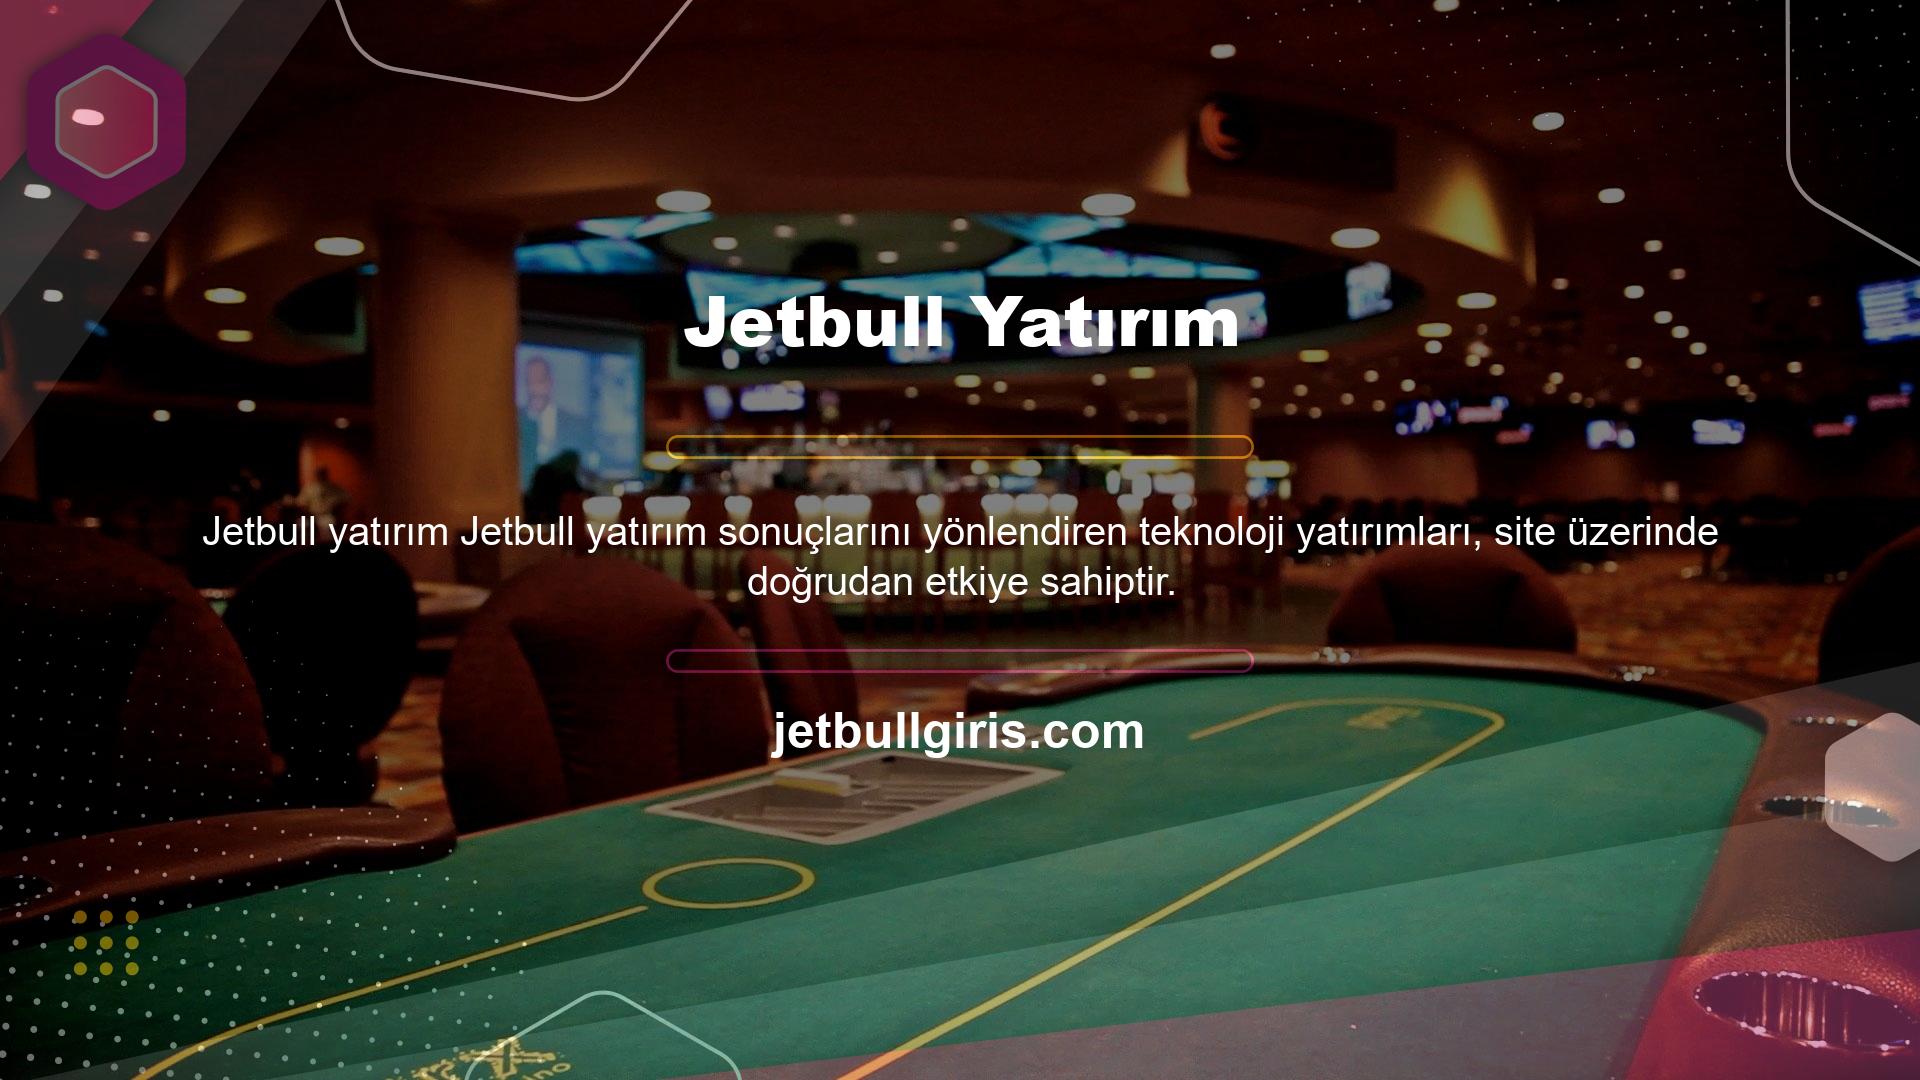 En yeni oyunlar ile birleşen Jetbull sitesi eğlencenin kapılarını aralıyor